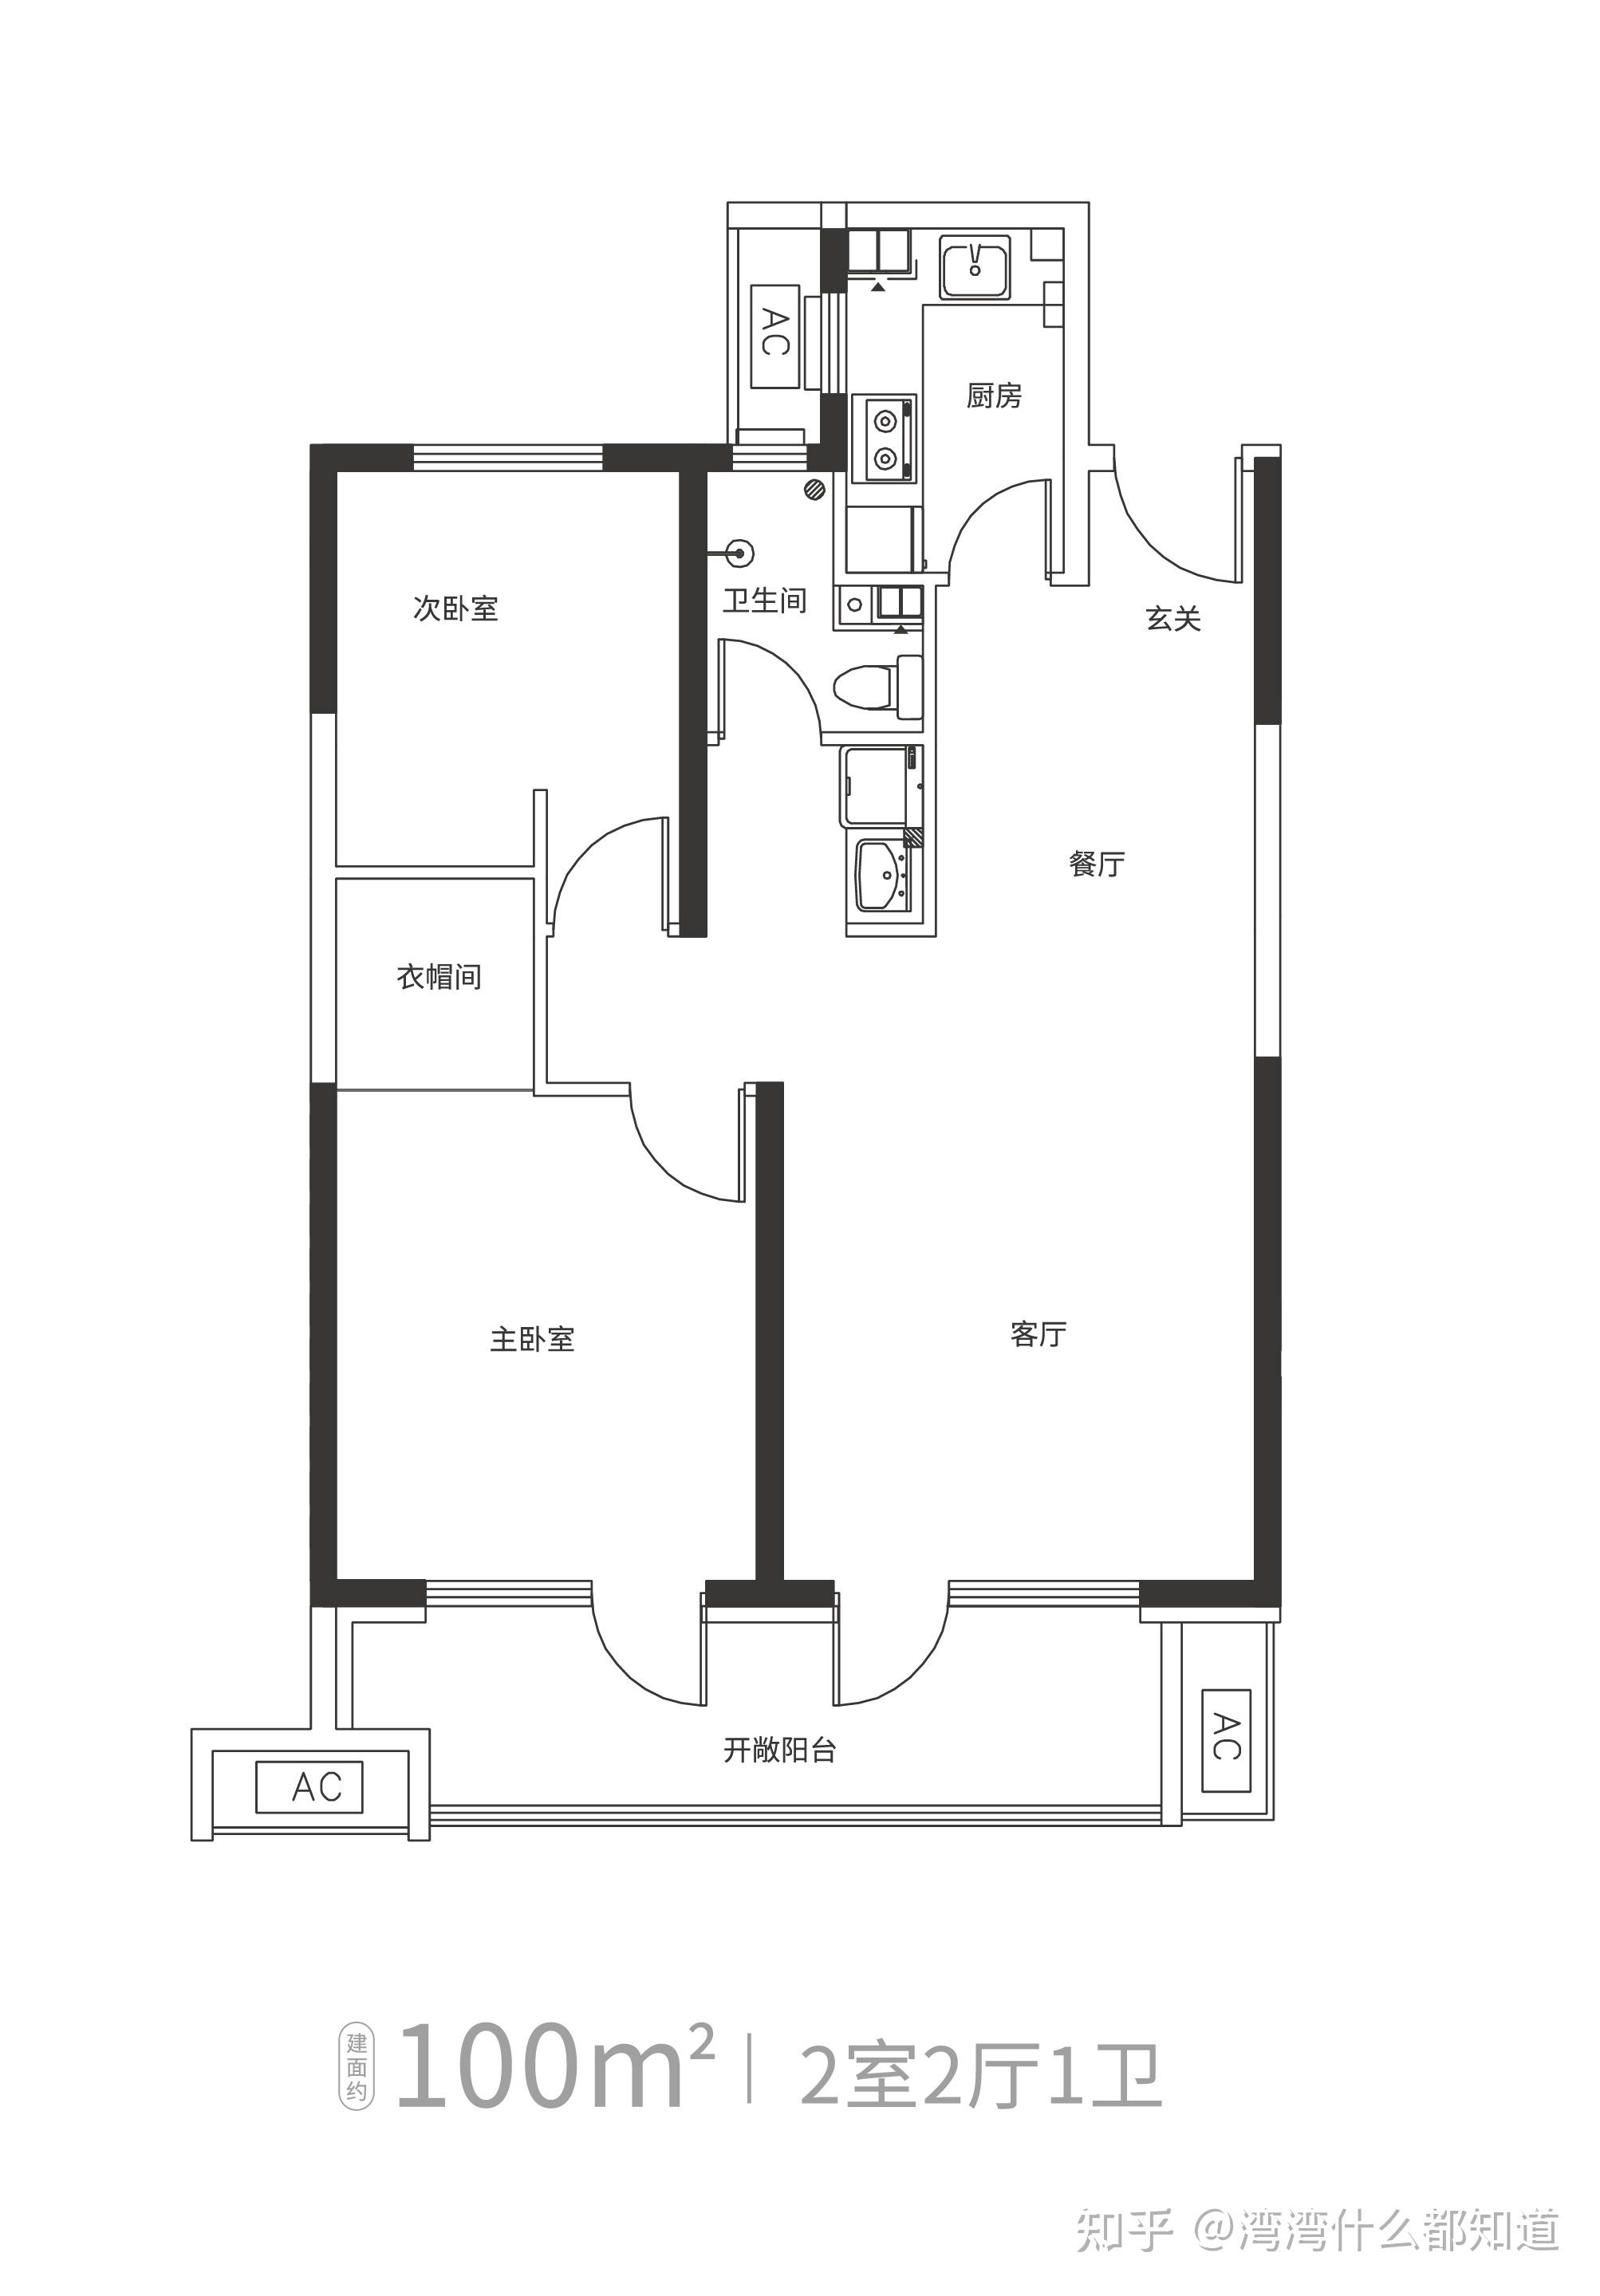 越秀北方区域丨青岛天悦海湾丨人才公寓户型图展示 - 知乎